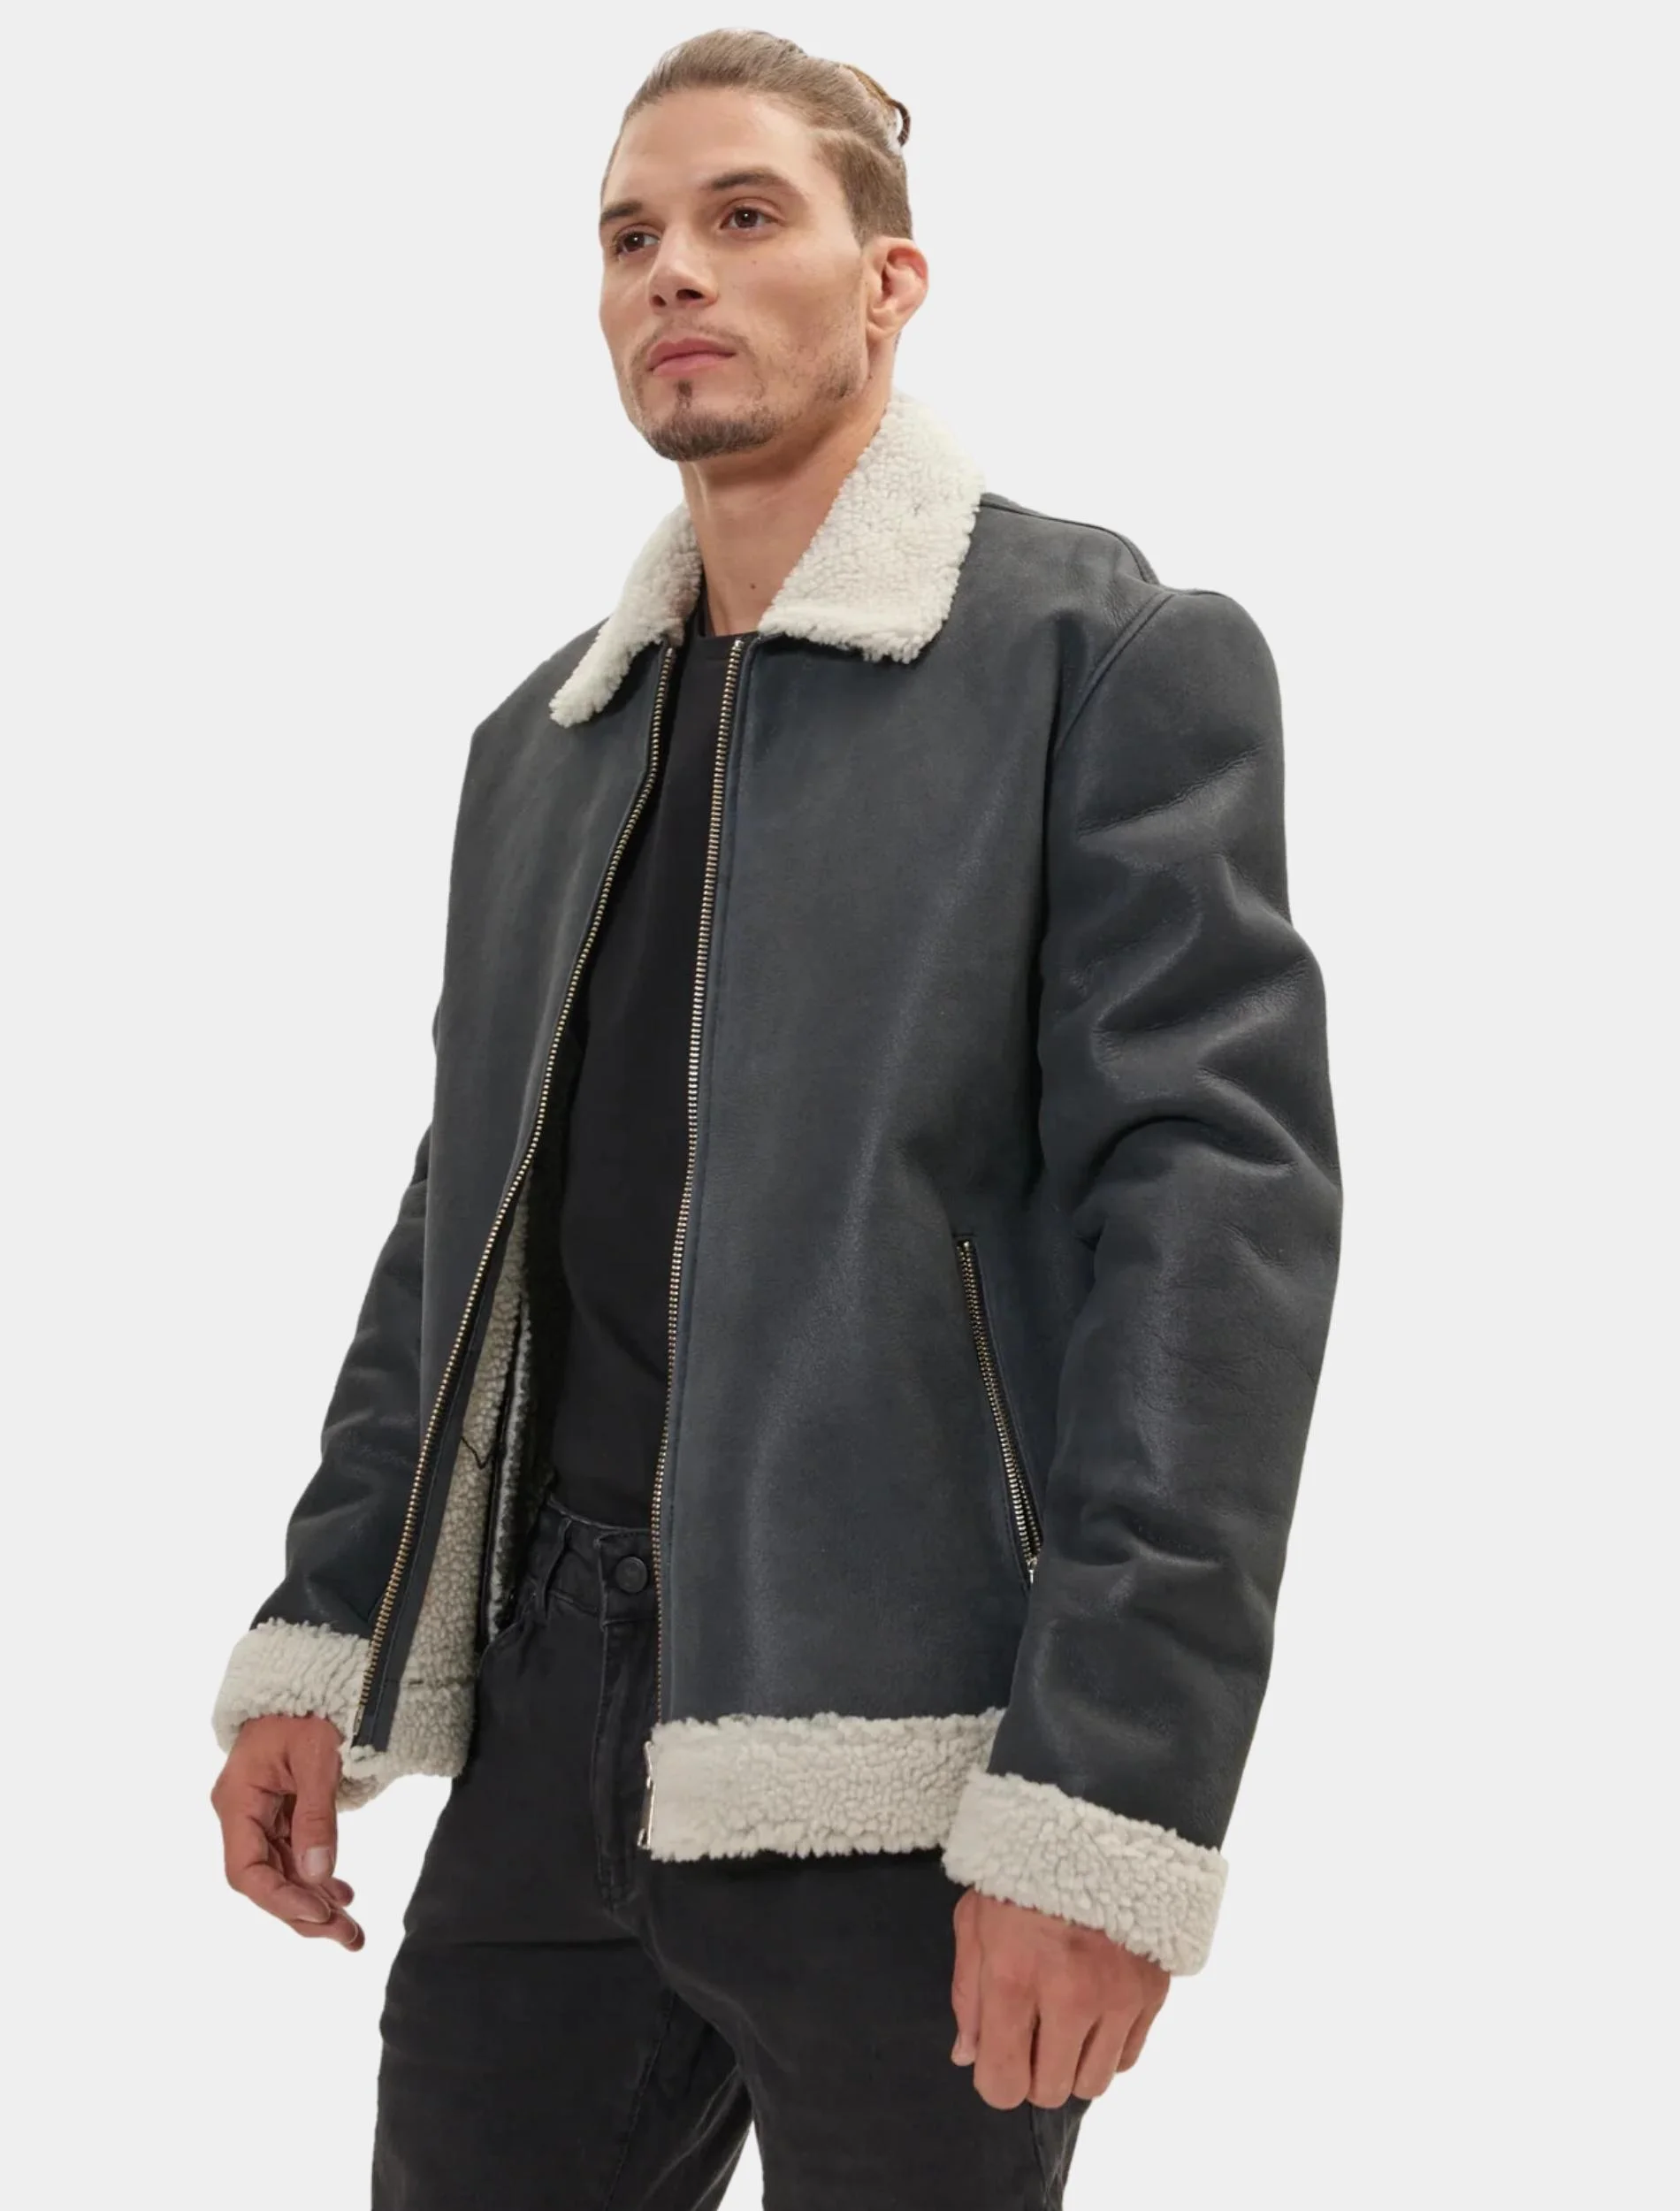 Mens Stylish Grey Leather Shearling Jacket side pose